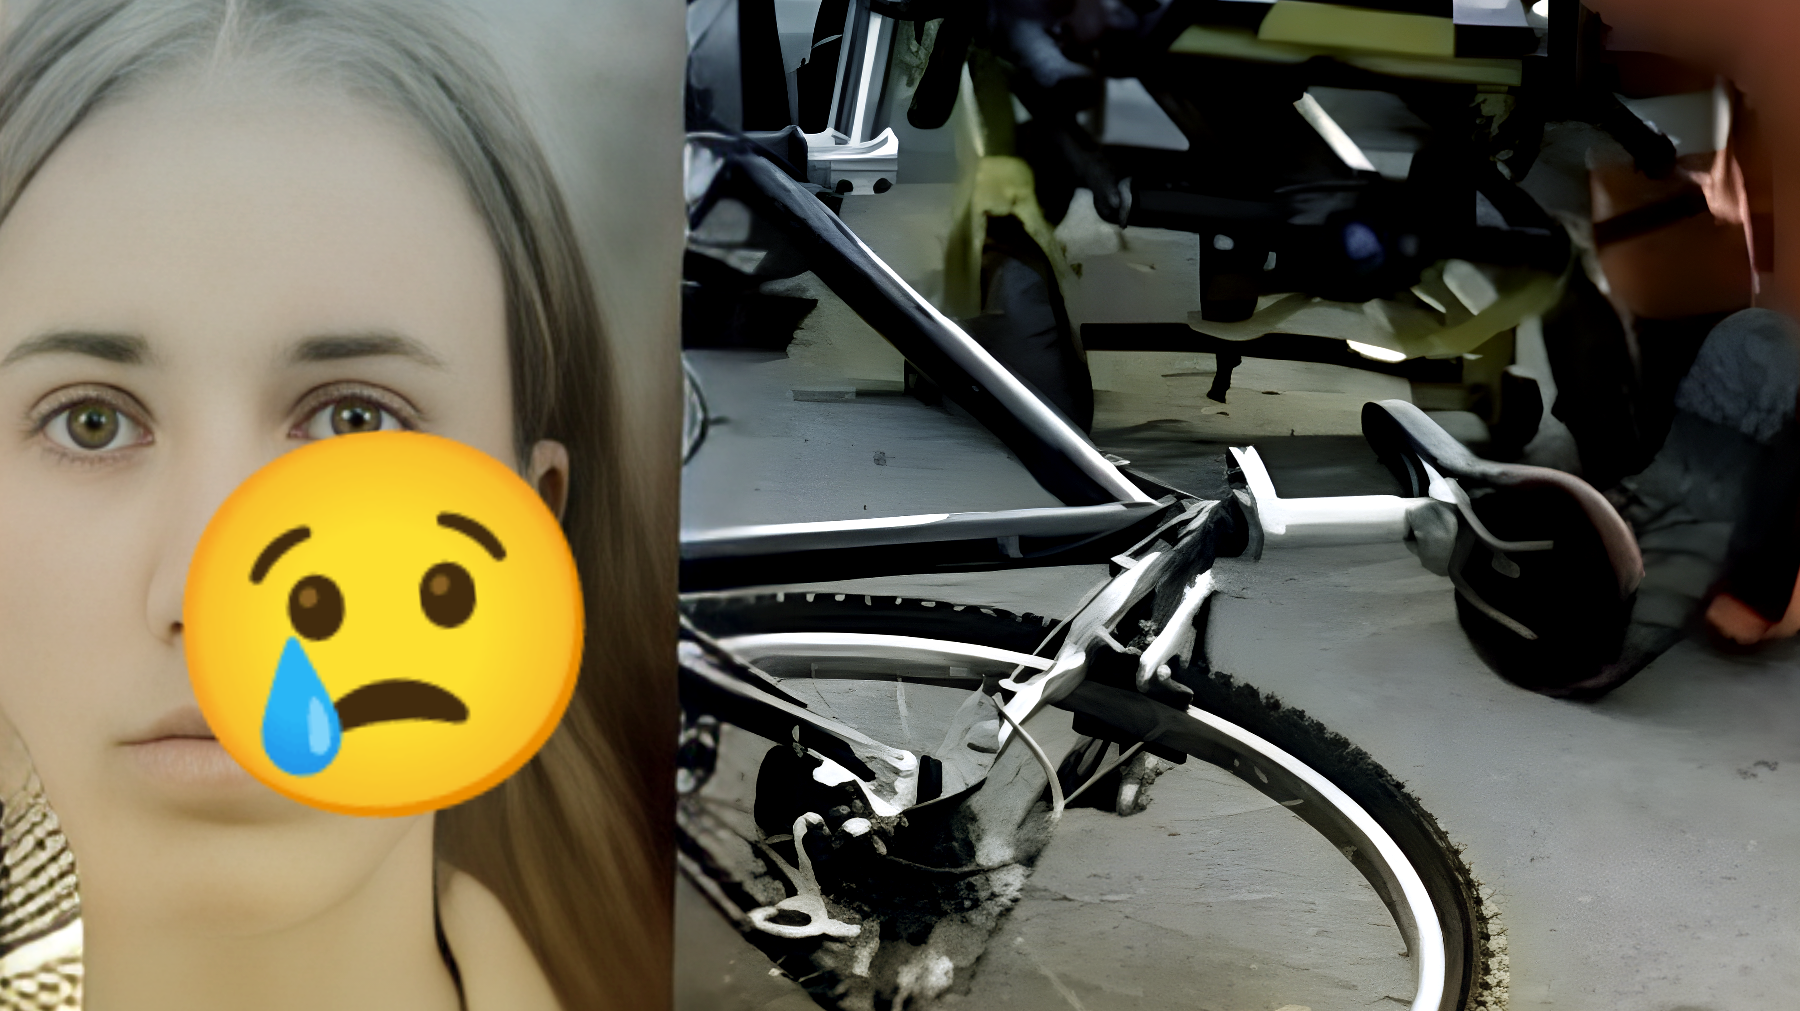 Tragedia in bici: giovane mamma investita da una moto e muore davanti alla figlia di 3 anni. Lo shock della piccola